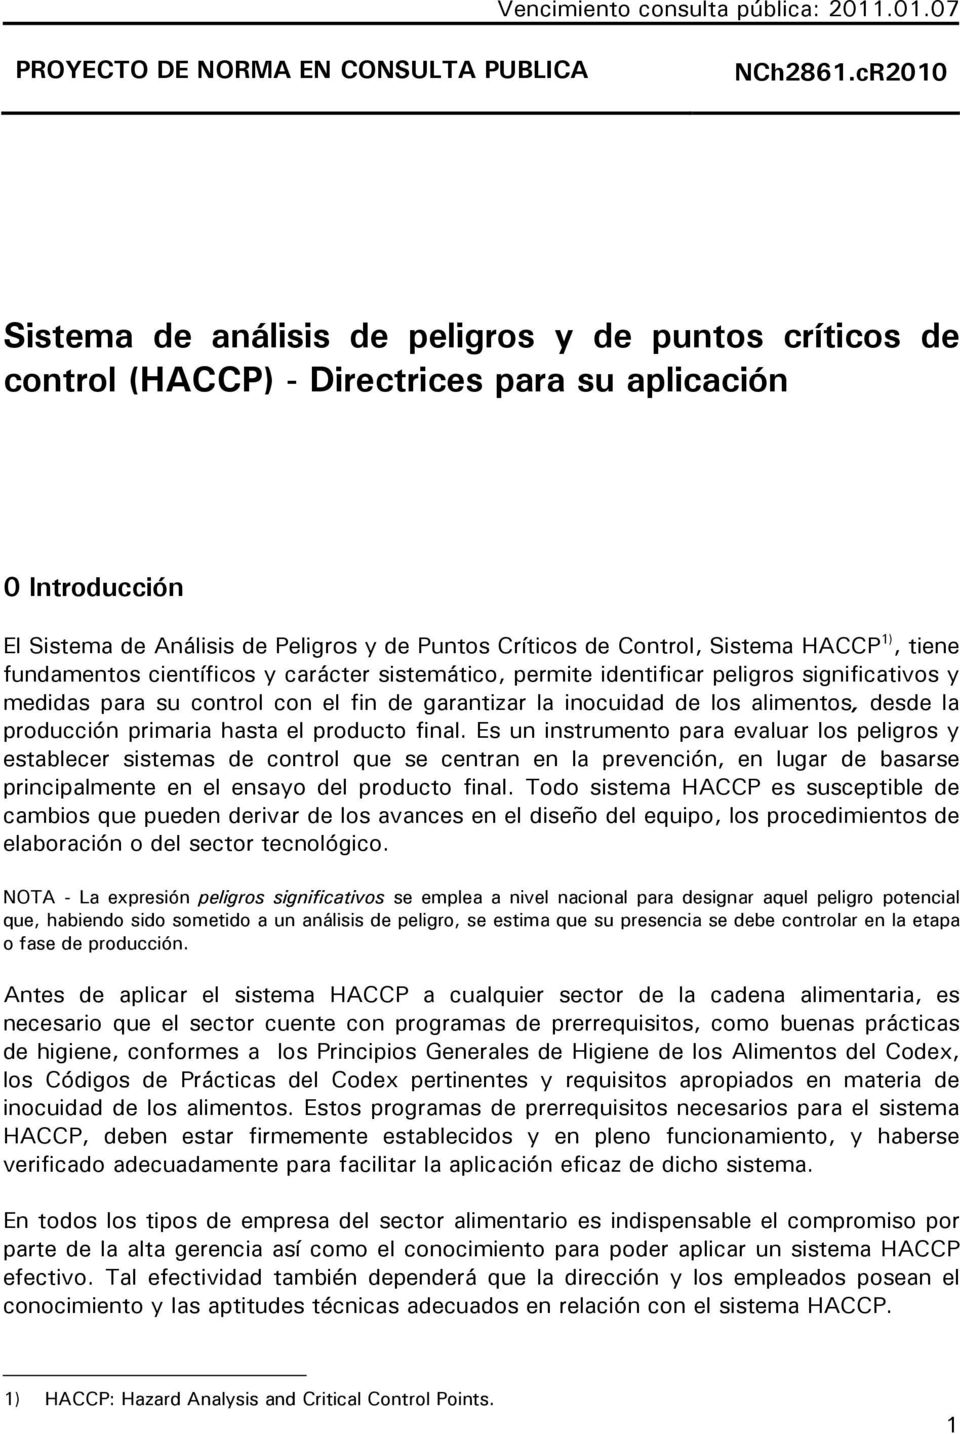 Sistema HACCP 1), tiene fundamentos científicos y carácter sistemático, permite identificar peligros significativos y medidas para su control con el fin de garantizar la inocuidad de los alimentos,